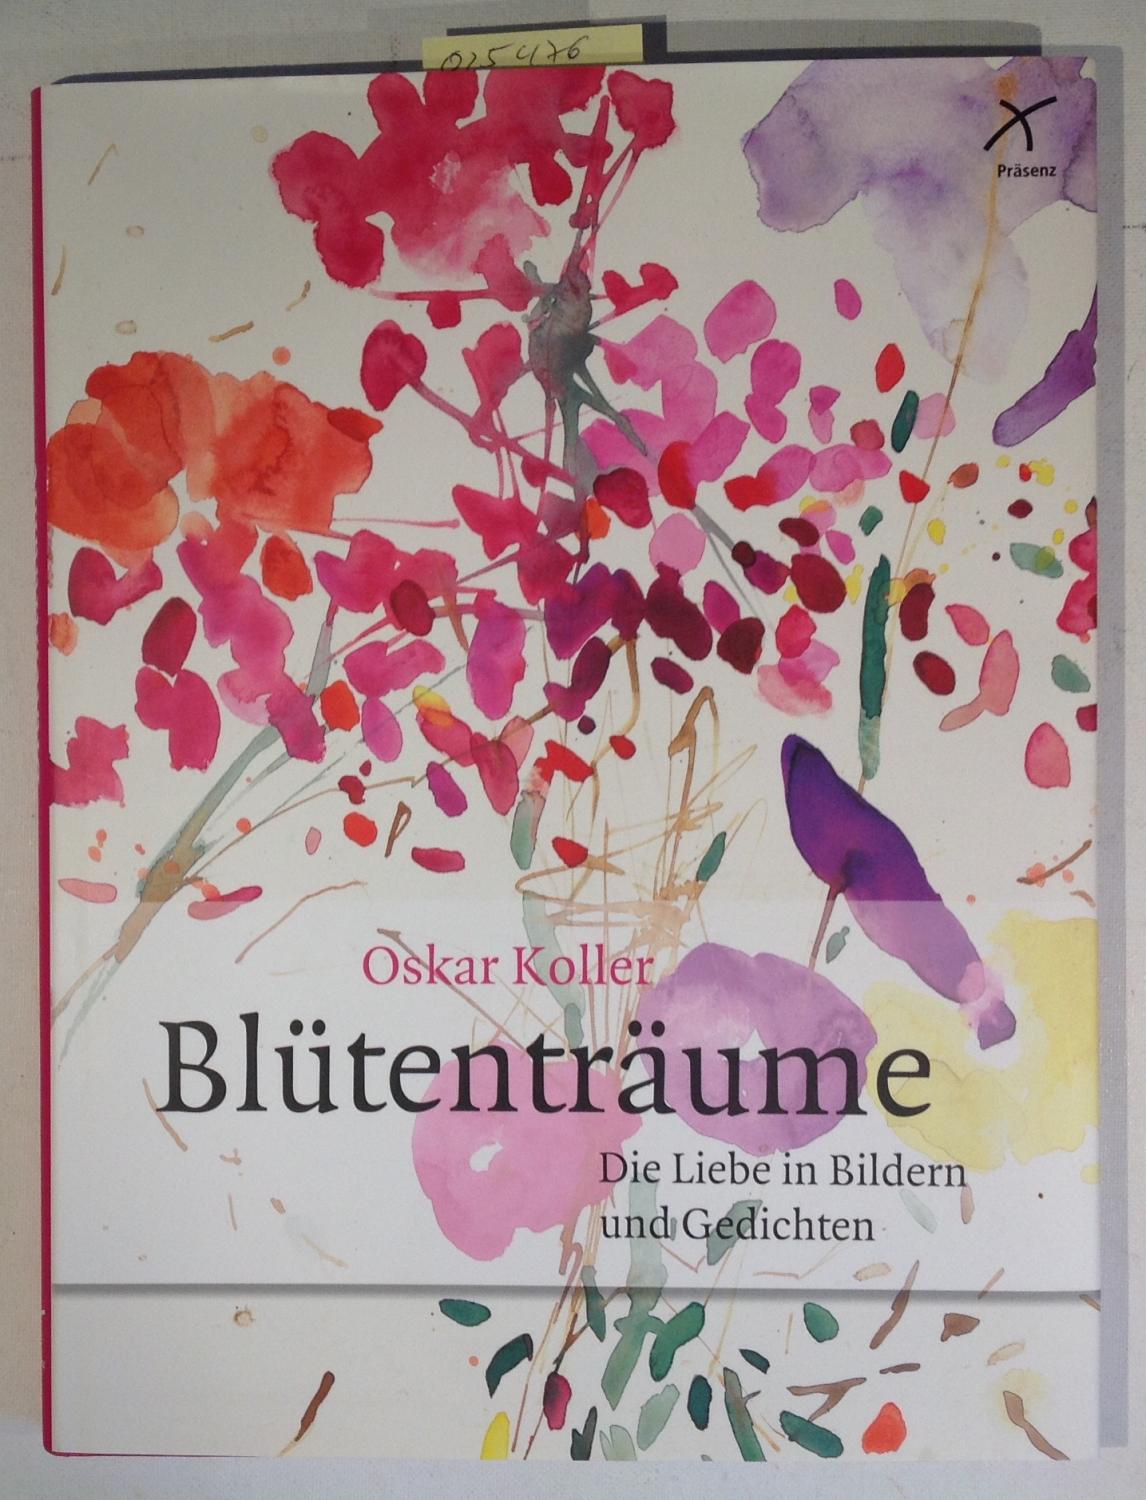 Blütenträume: Die Liebe in Bildern und Gedichten - Oskar Koller; Mattejiet, Ulrich - Herausgeber